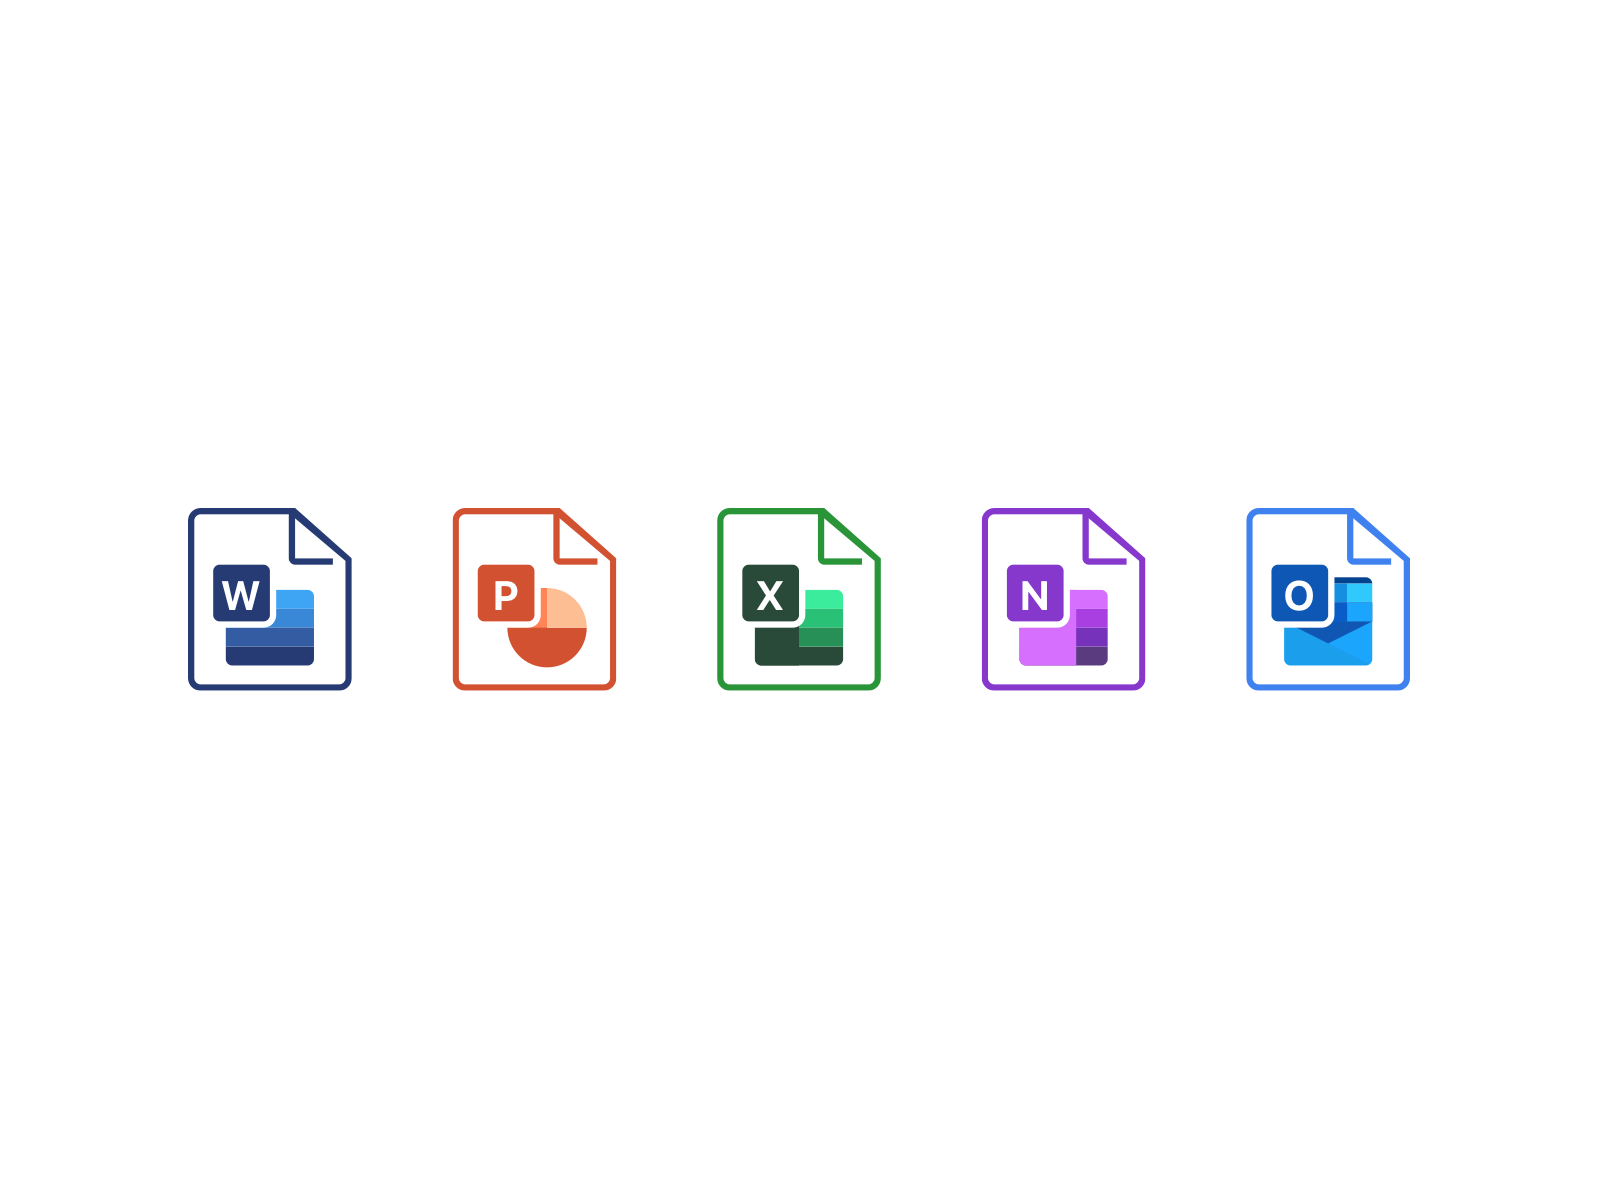 Формат microsoft office. Значок Майкрософт офис. Microsoft Office 365 icon. Значки программ офиса. Иконки для офисных приложений.